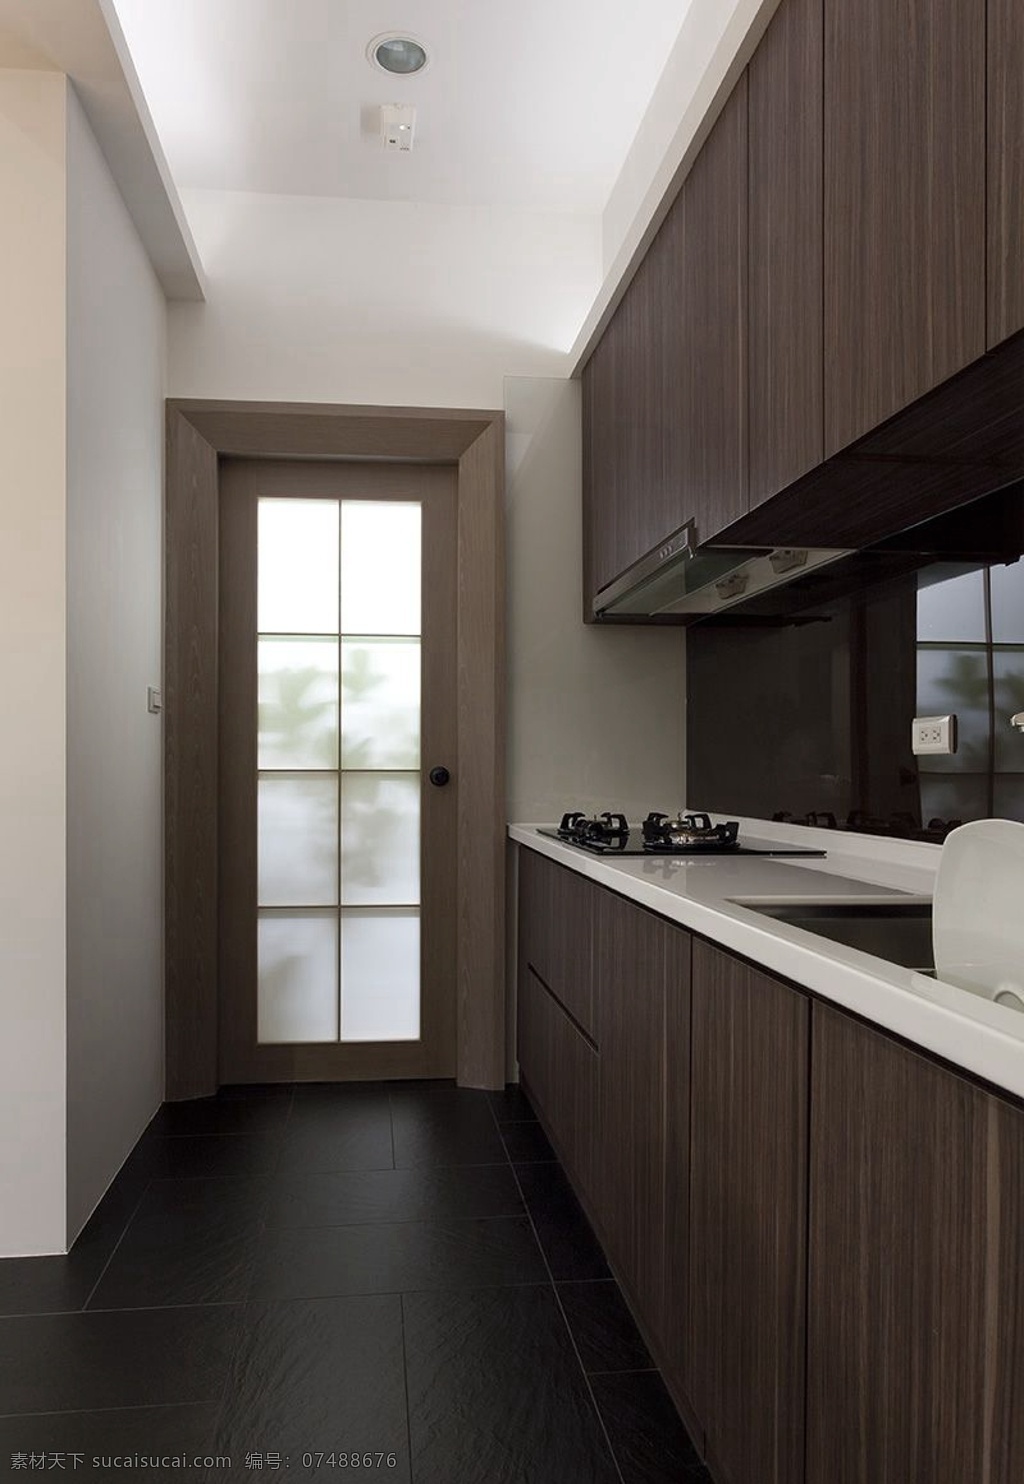 现代 简约 风 室内设计 厨房门 走廊 效果图 厨房 料理 台门 壁柜 吊柜 家装